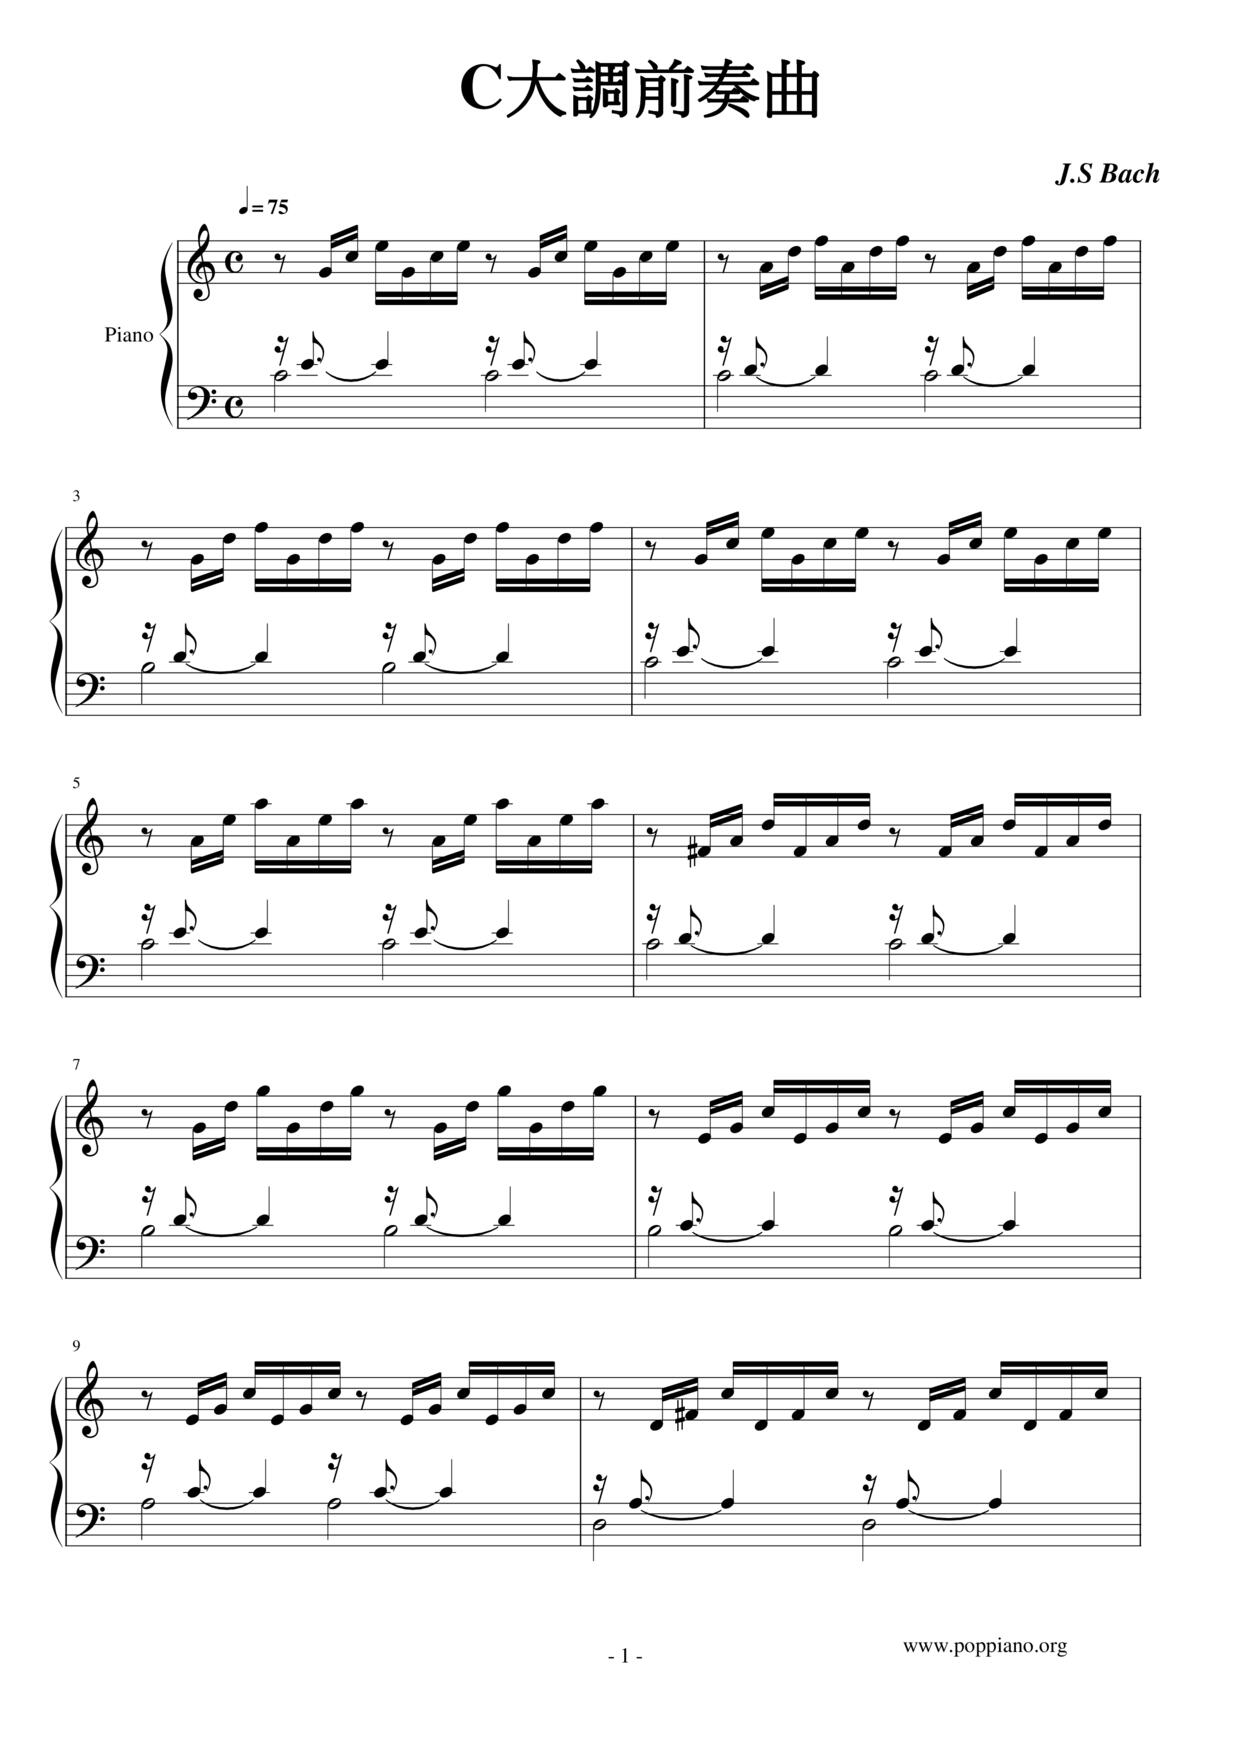 Prelude in C Major (C大調前奏曲) Score